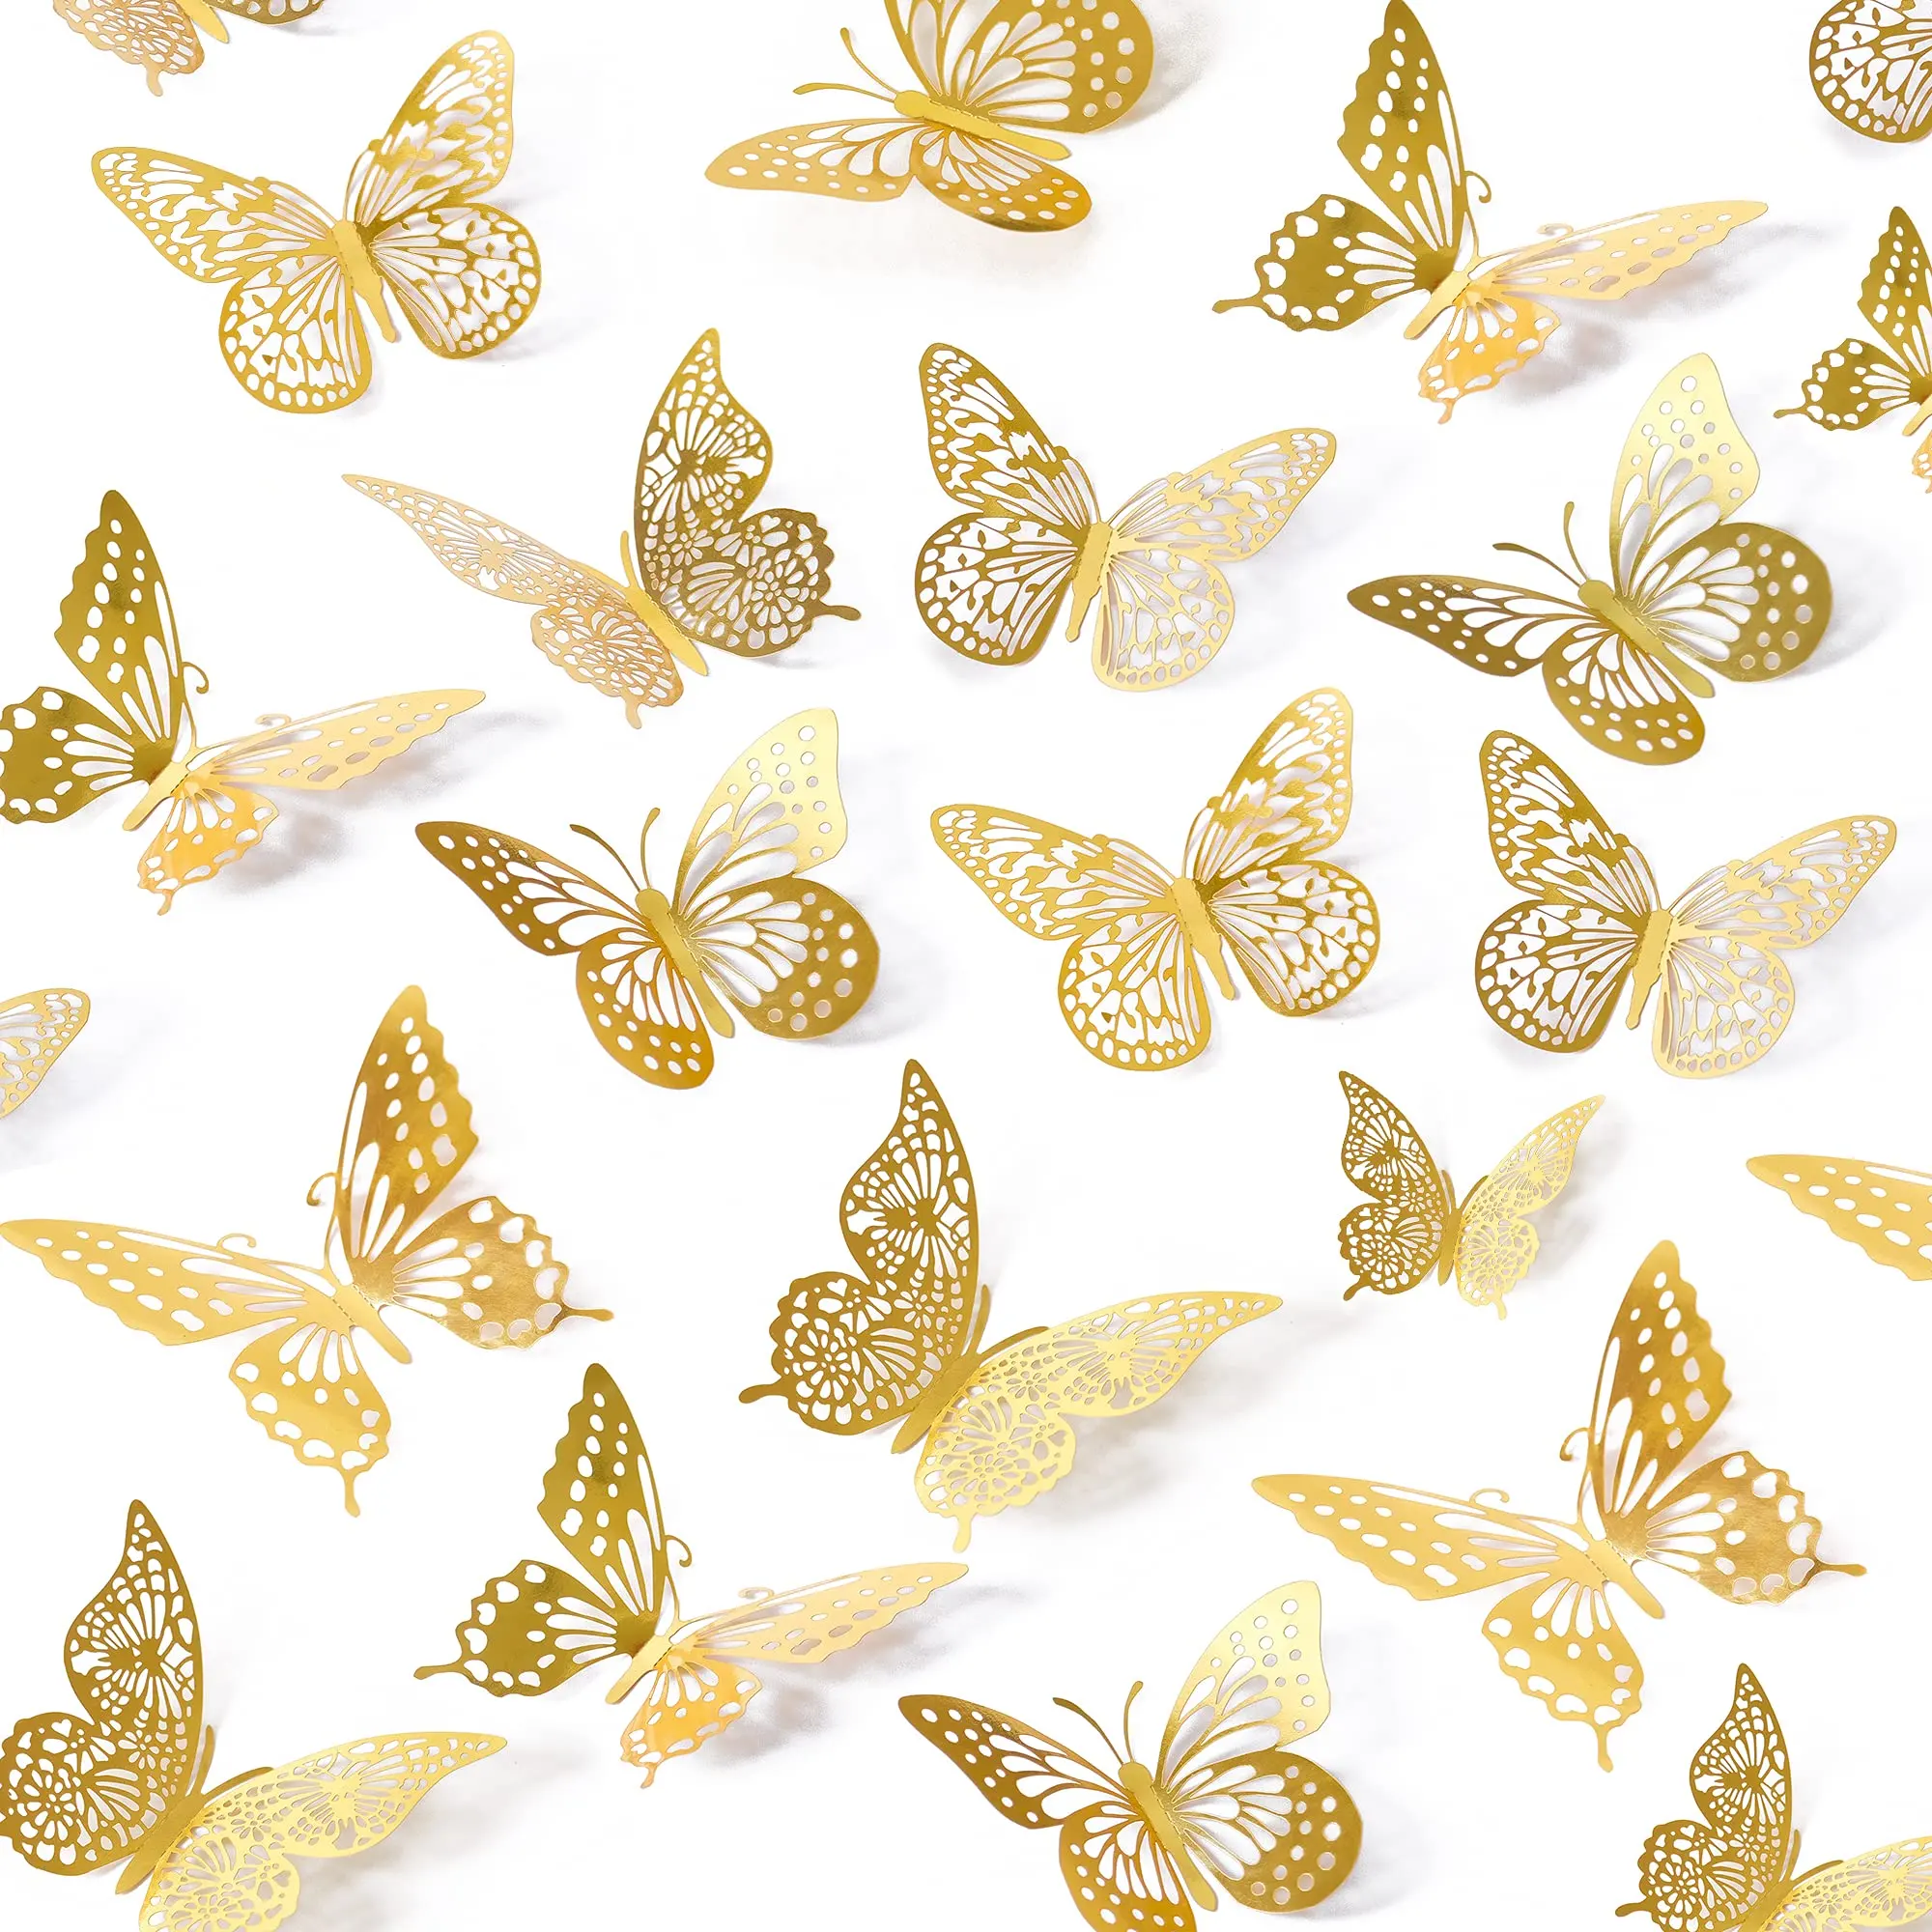 12 Stück 3D Butterfly Party Dekorationen, abnehmbare Wanda uf kleber Raum dekoration für Kinder Kinderzimmer Klassen zimmer Hochzeits dekor